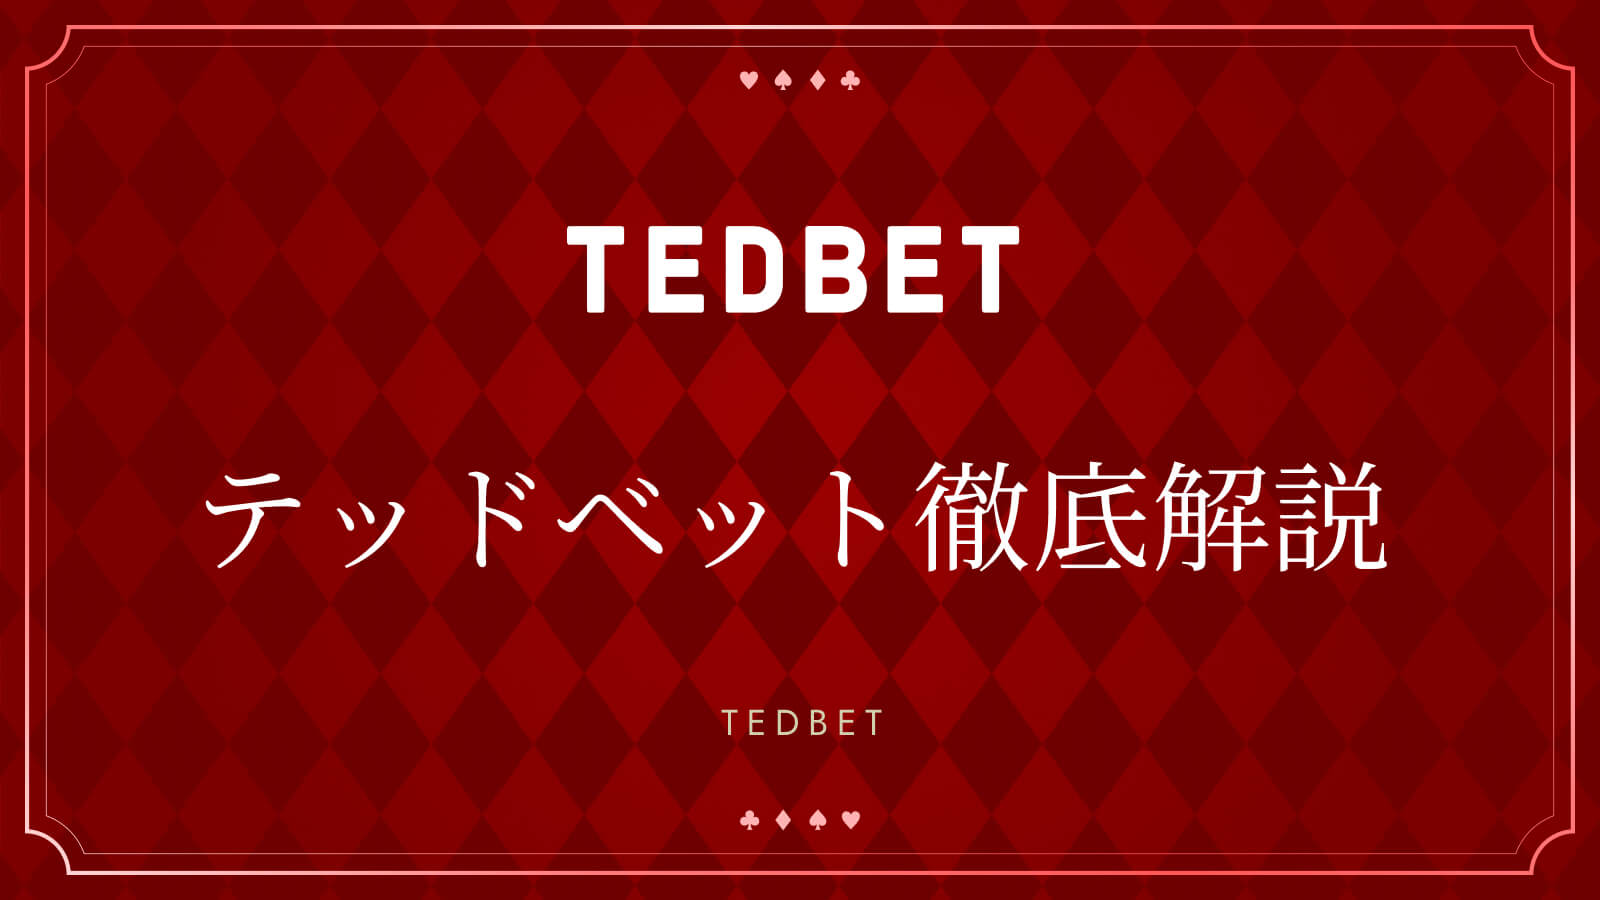 テッドベット解説 TEDBET